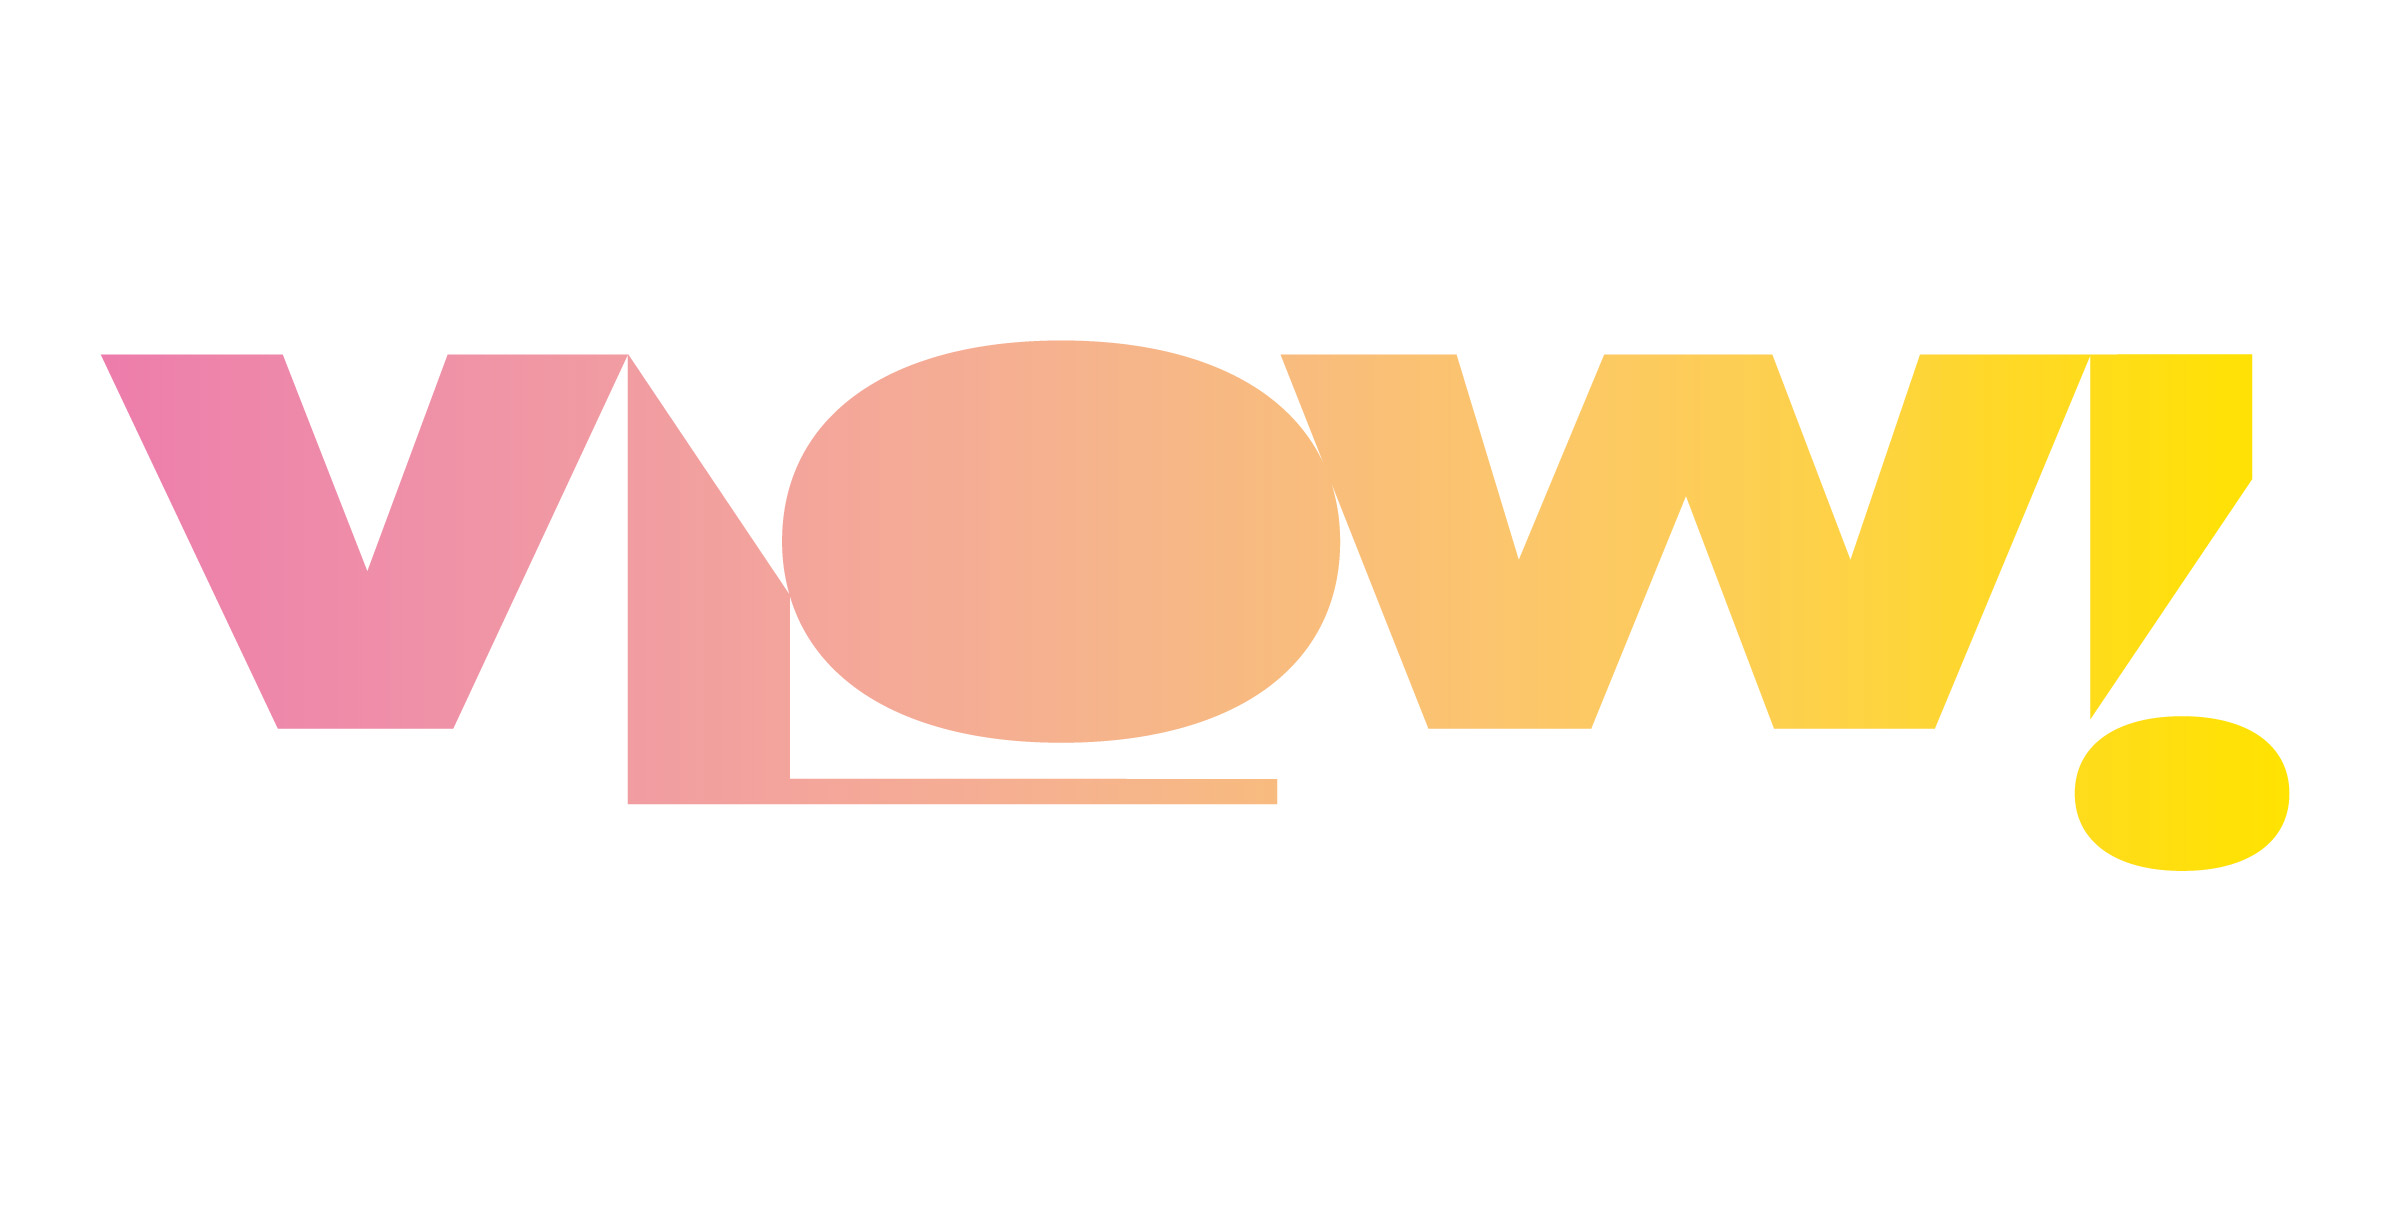 VLOW!14 präsentiert Methoden der Kreation und Ideenentwicklung